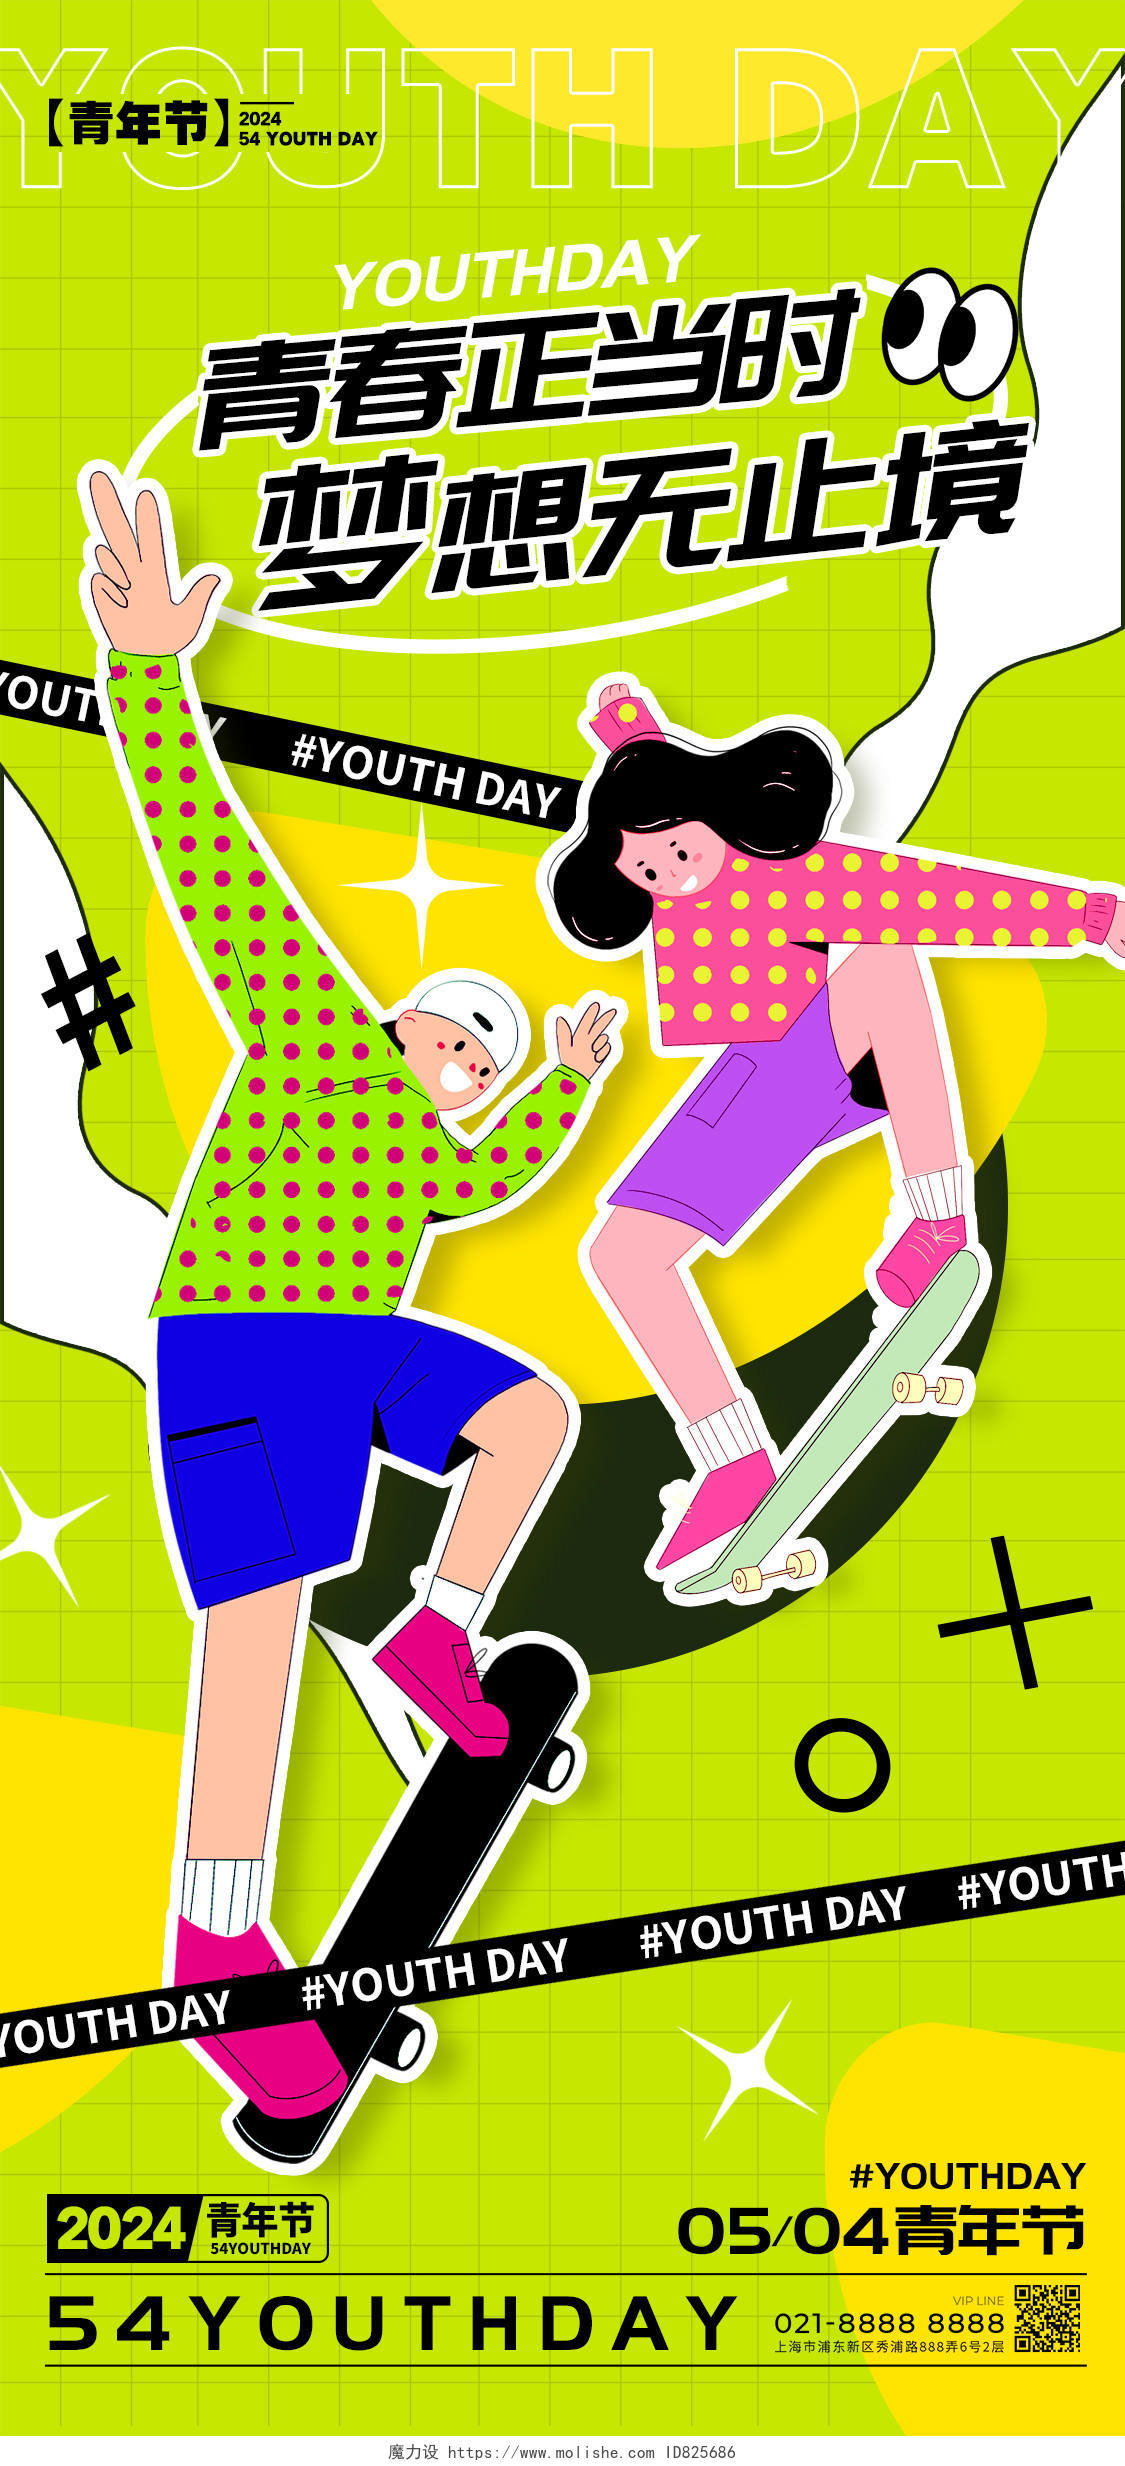 绿色插画风格青年节五四青年节宣传海报五四青年节手机宣传海报五四54青年节